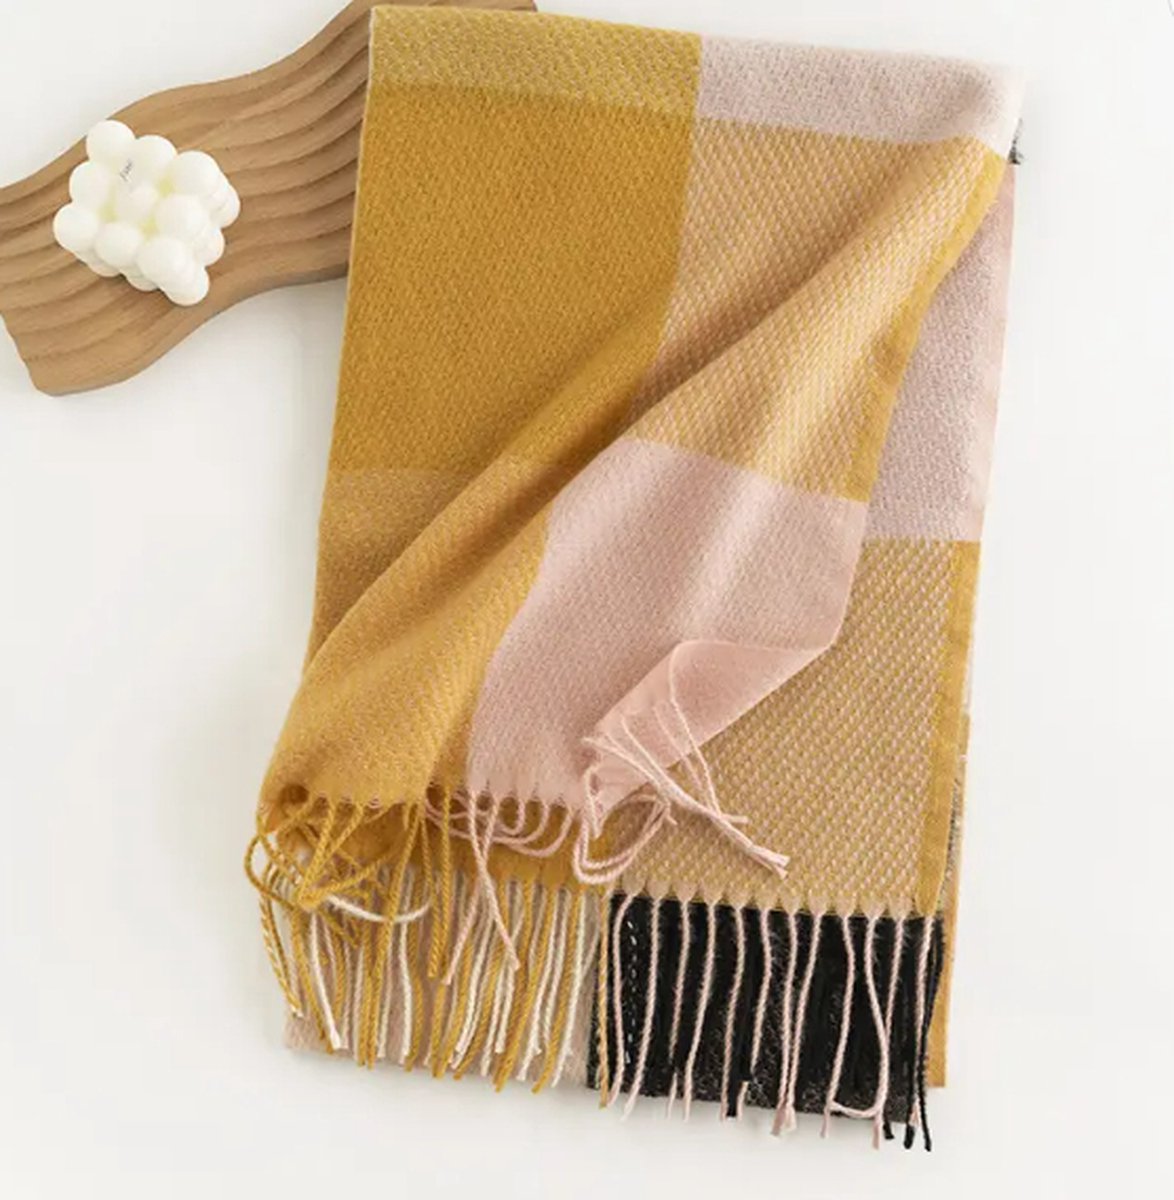 Sjaal Bourbon / Pink / super zacht / 206 cm lang en 65 cm breed / verkrijgbaar in 10 verschillende kleuren